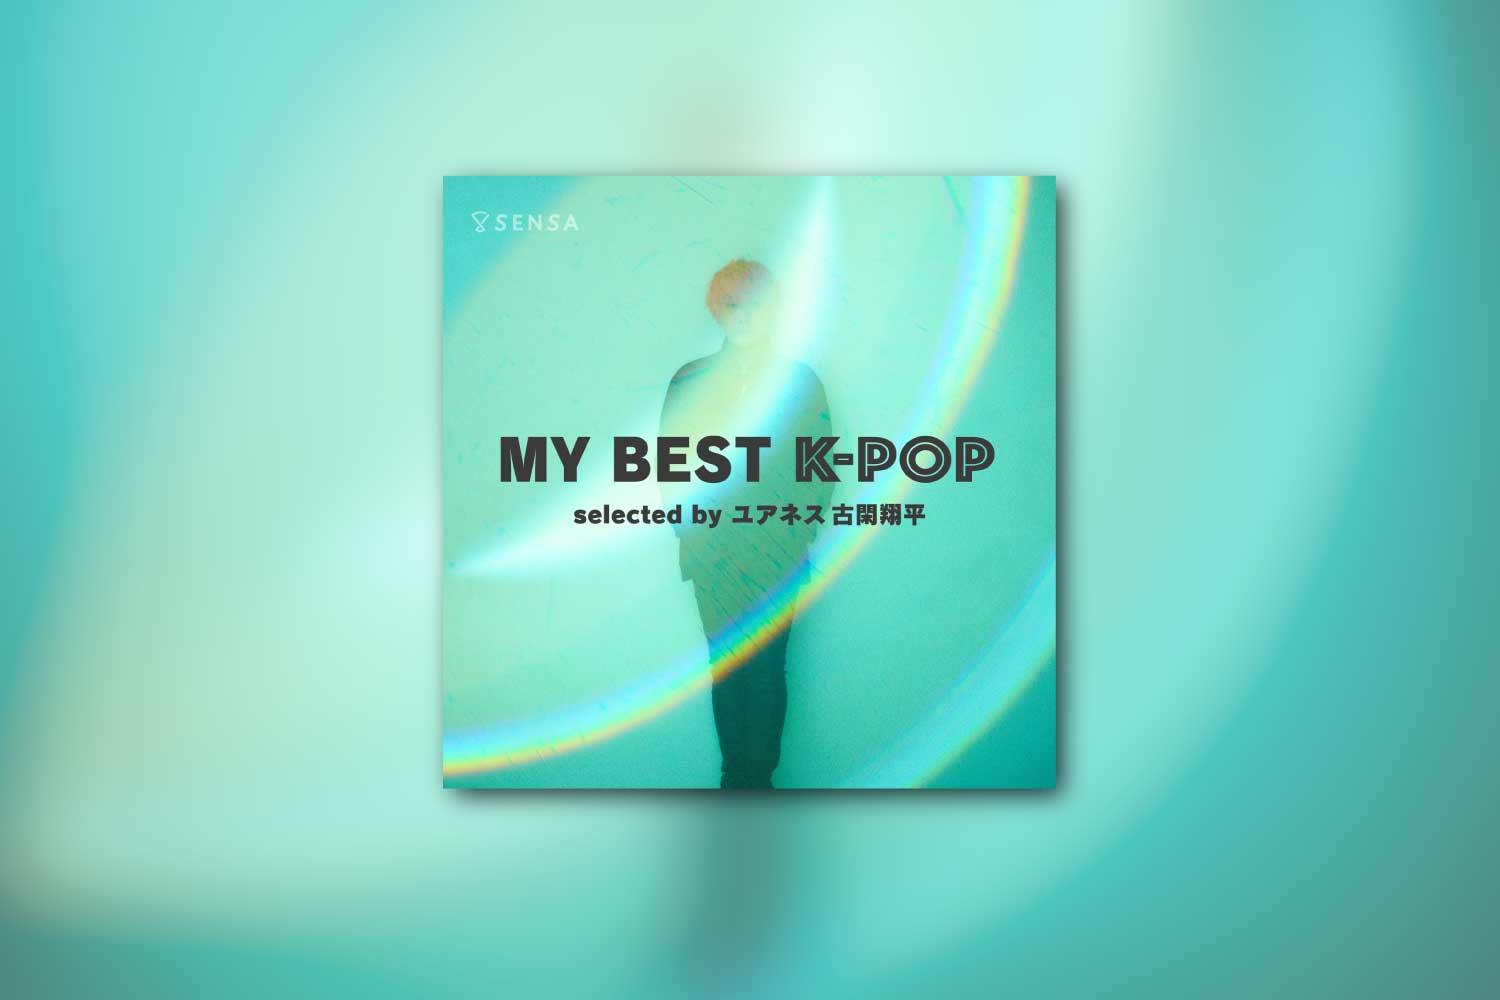 K-POPを愛聴するユアネス 古閑翔平(Gt/Programming)が選曲したプレイリスト「MY BEST K-POP」